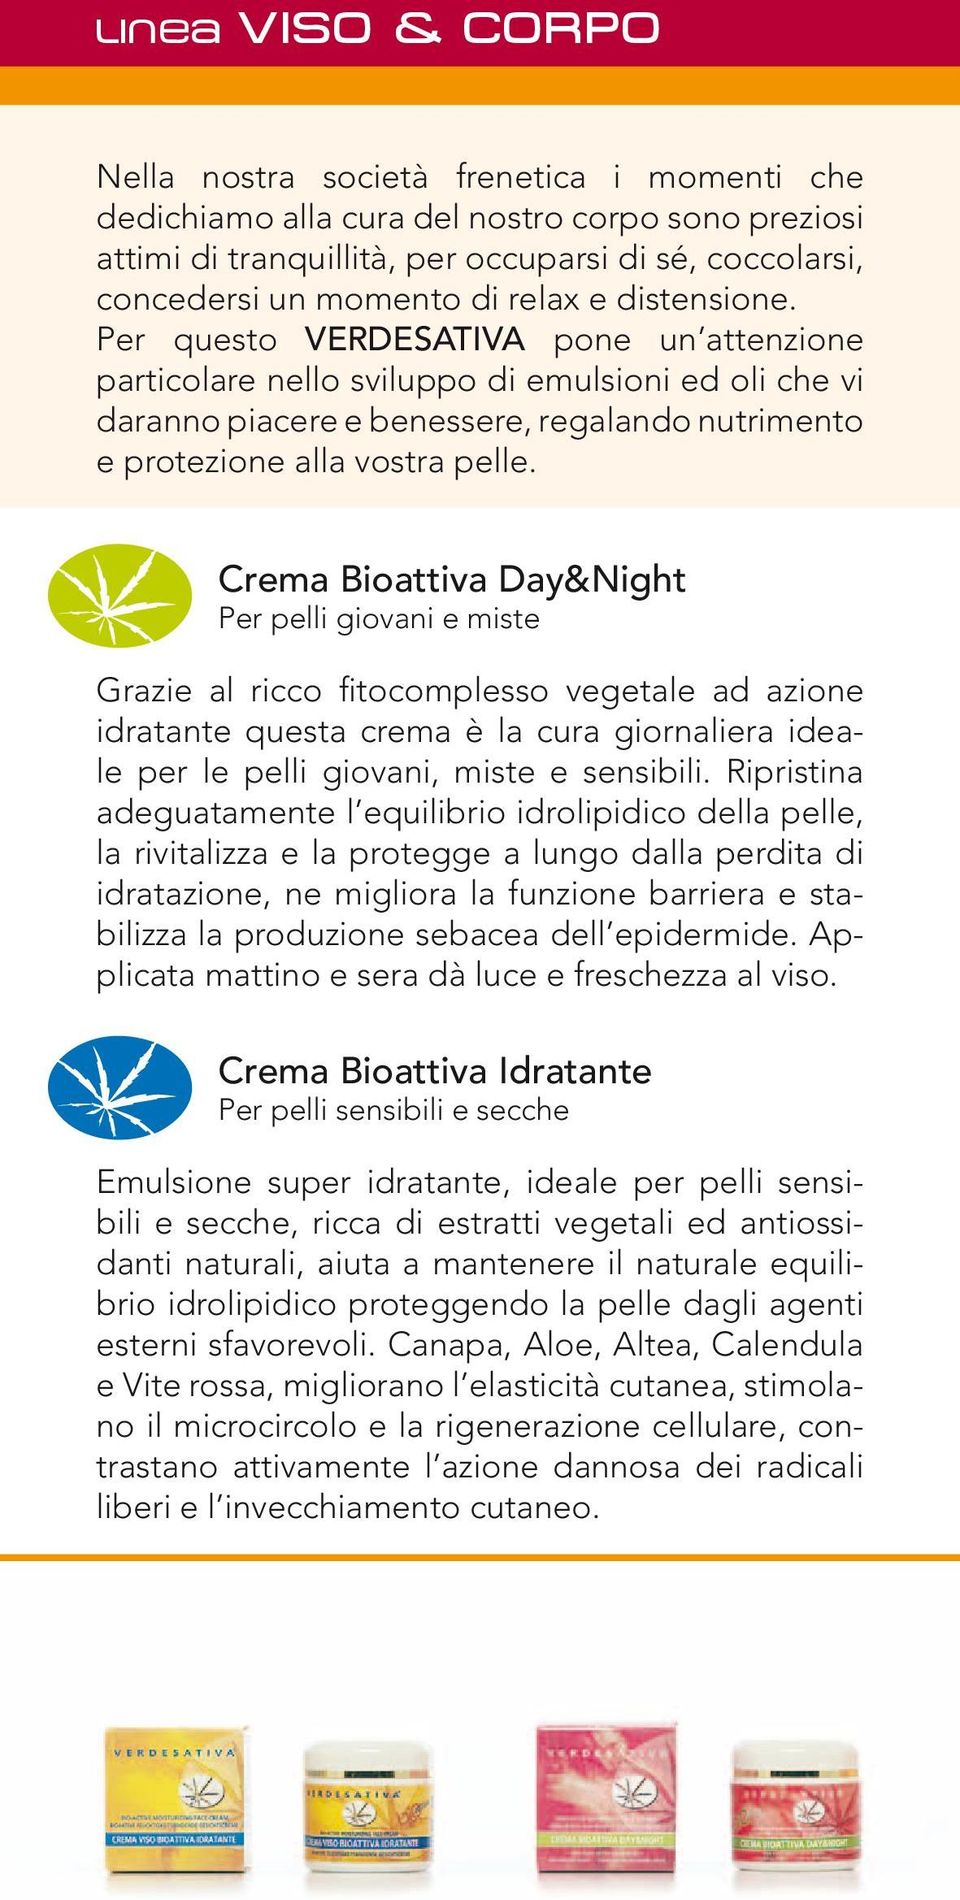 Crema Bioattiva Day&Night Per pelli giovani e miste Grazie al ricco fitocomplesso vegetale ad azione idratante questa crema è la cura giornaliera ideale per le pelli giovani, miste e sensibili.